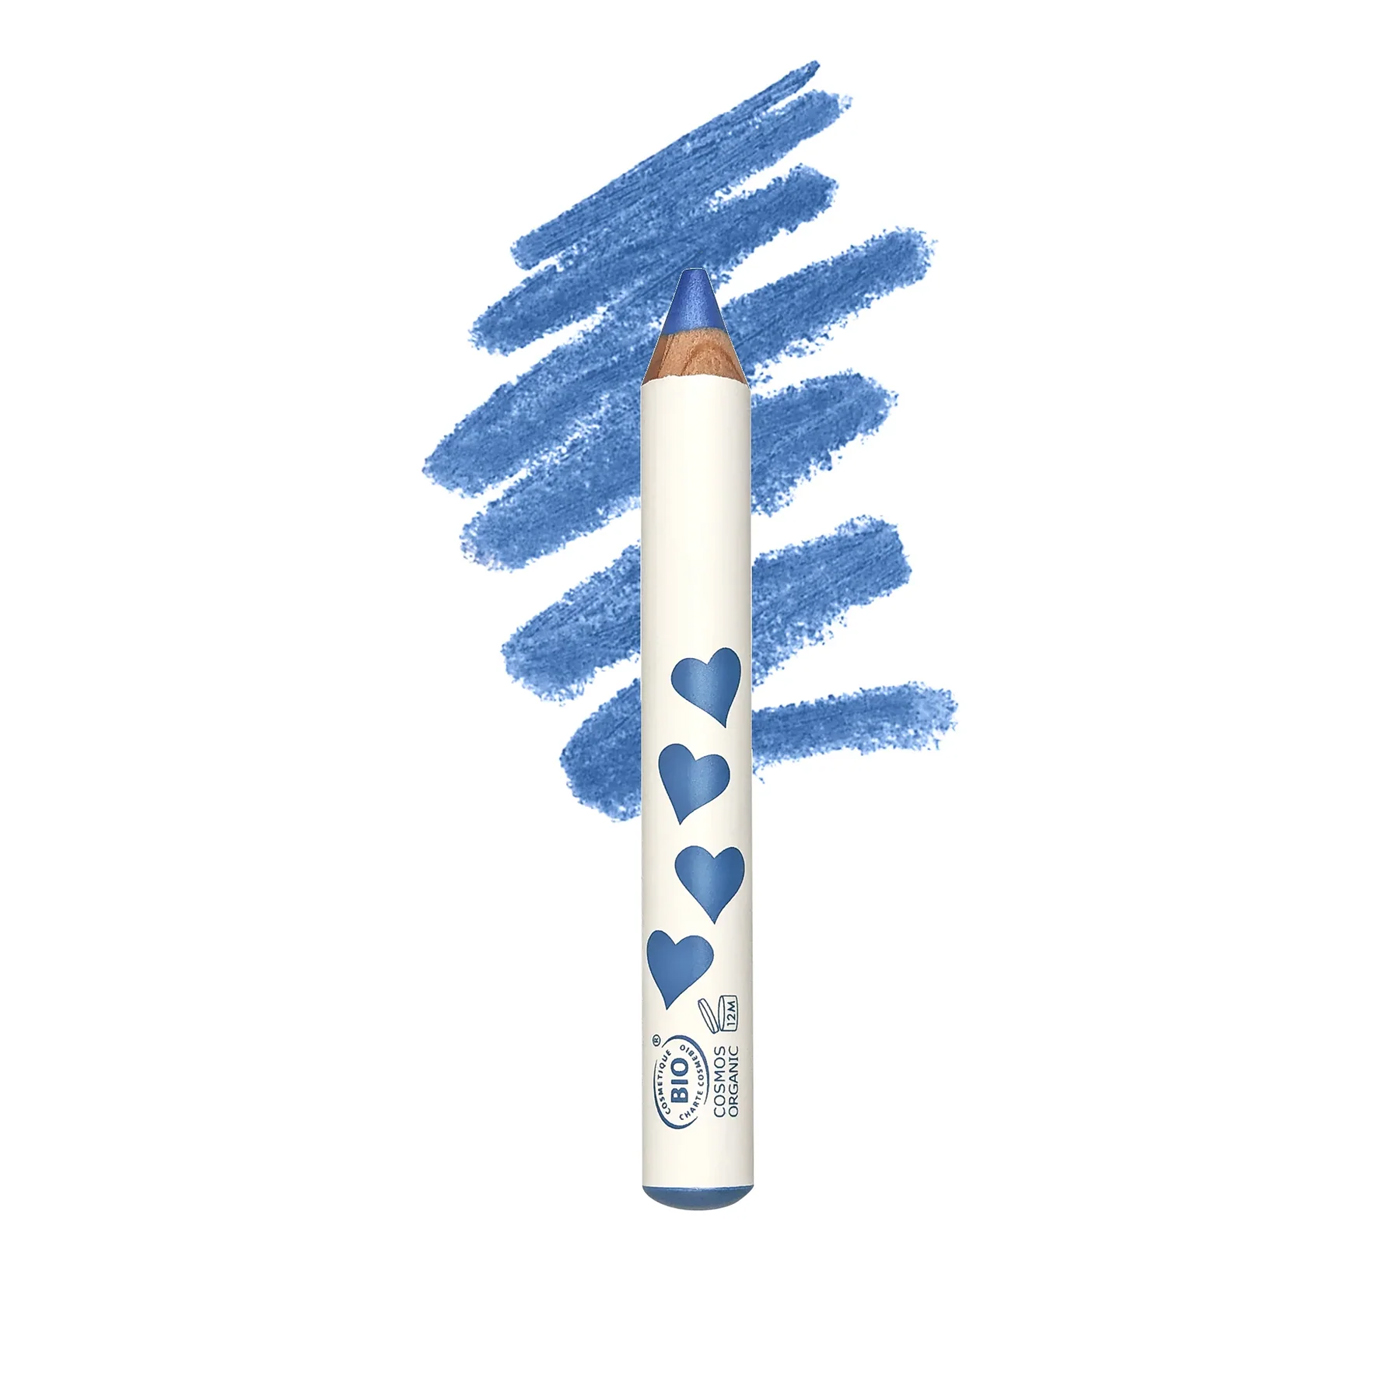 INUWET Inuwet Make Up Pencil - Makyaj Kalemi  | Light Blue